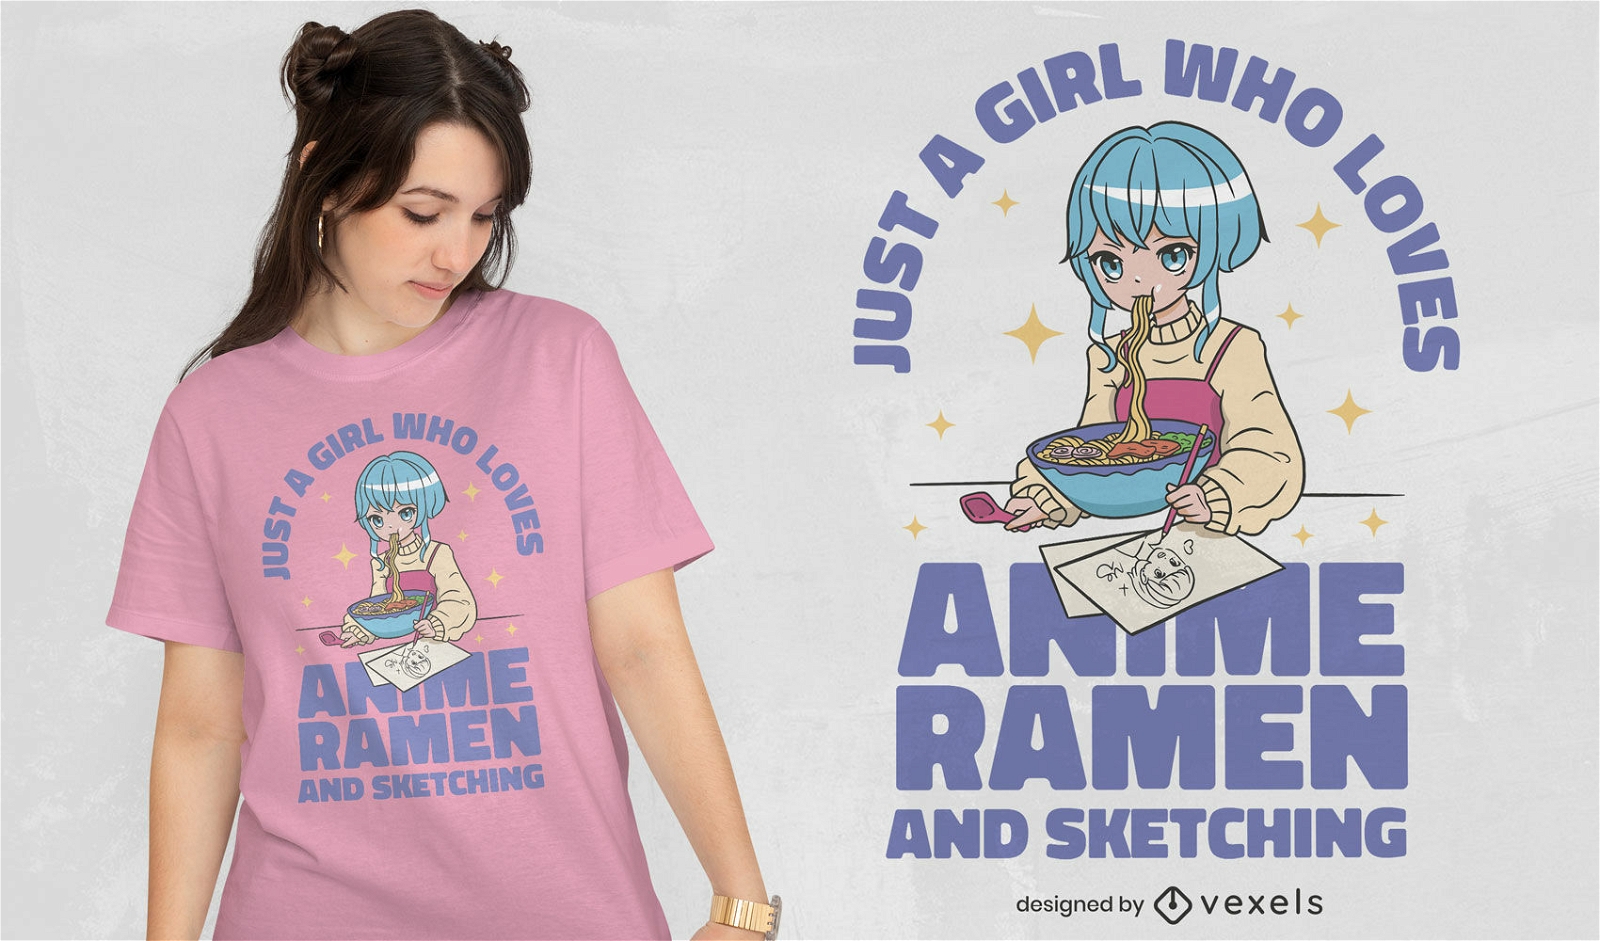 Camiseta kawaii, anime, garota, apenas, que, ama, esboça